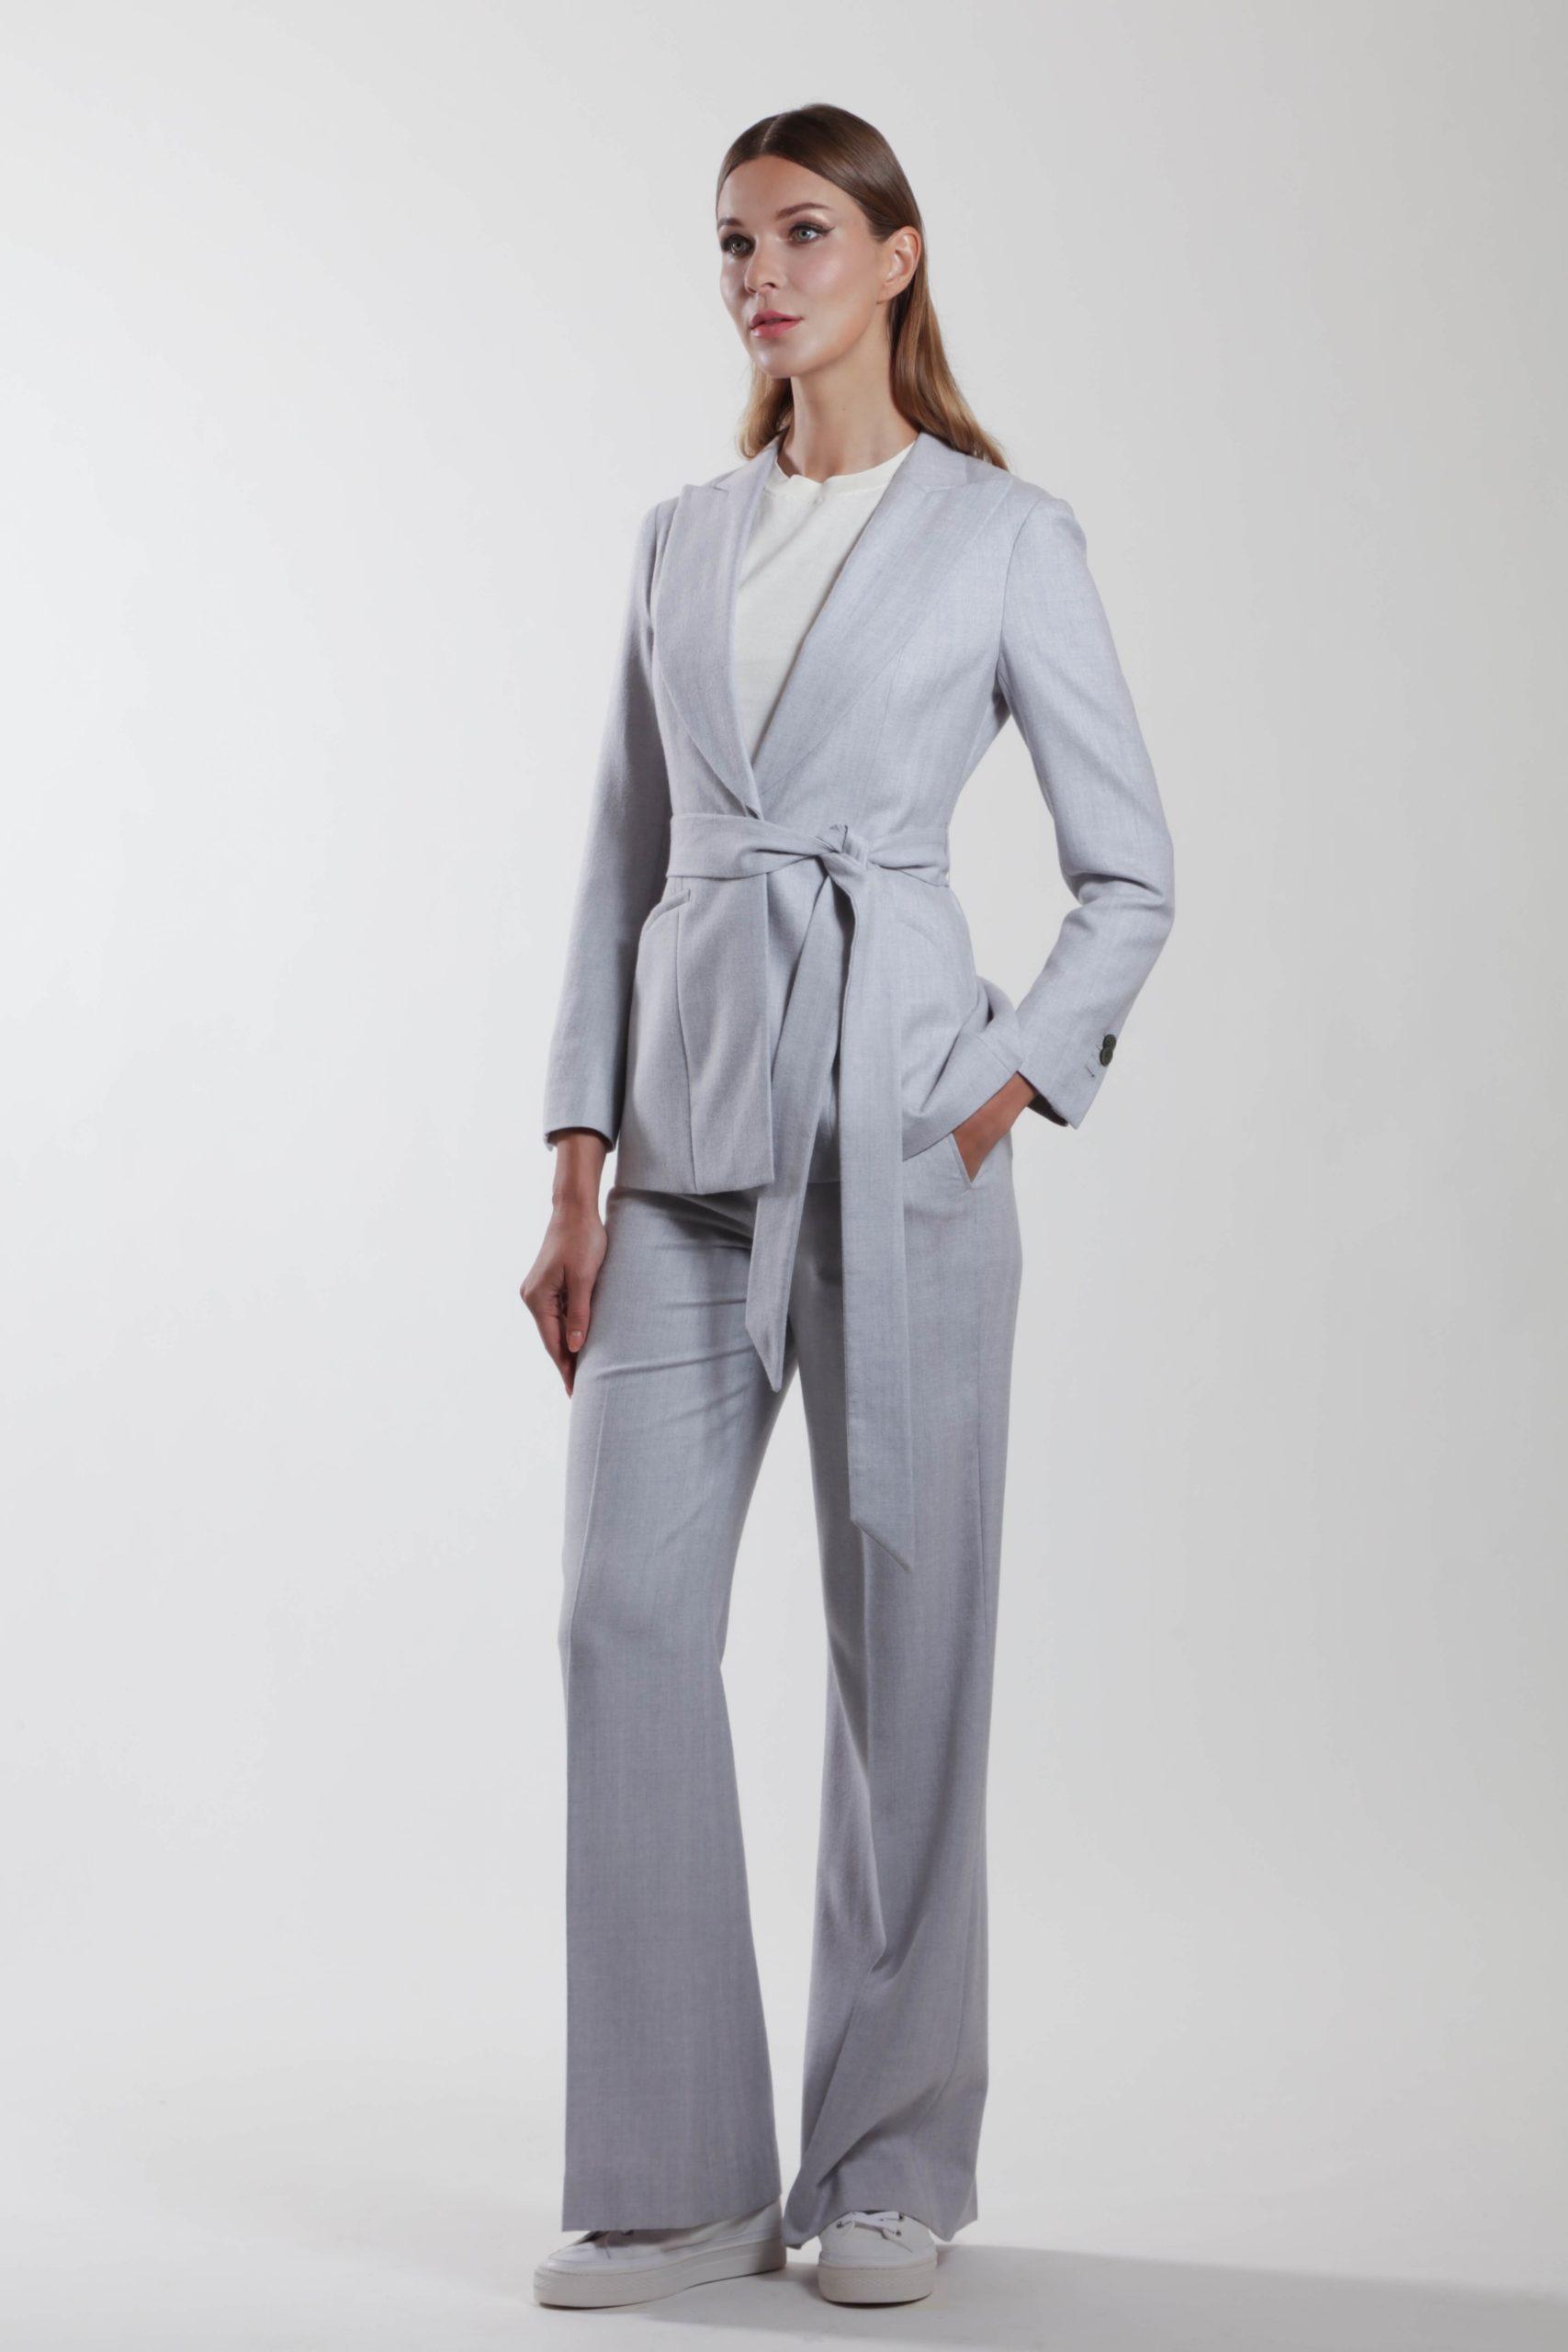 Montpellier – Wool suit jacket with peaked lapels sky grey herringbone0